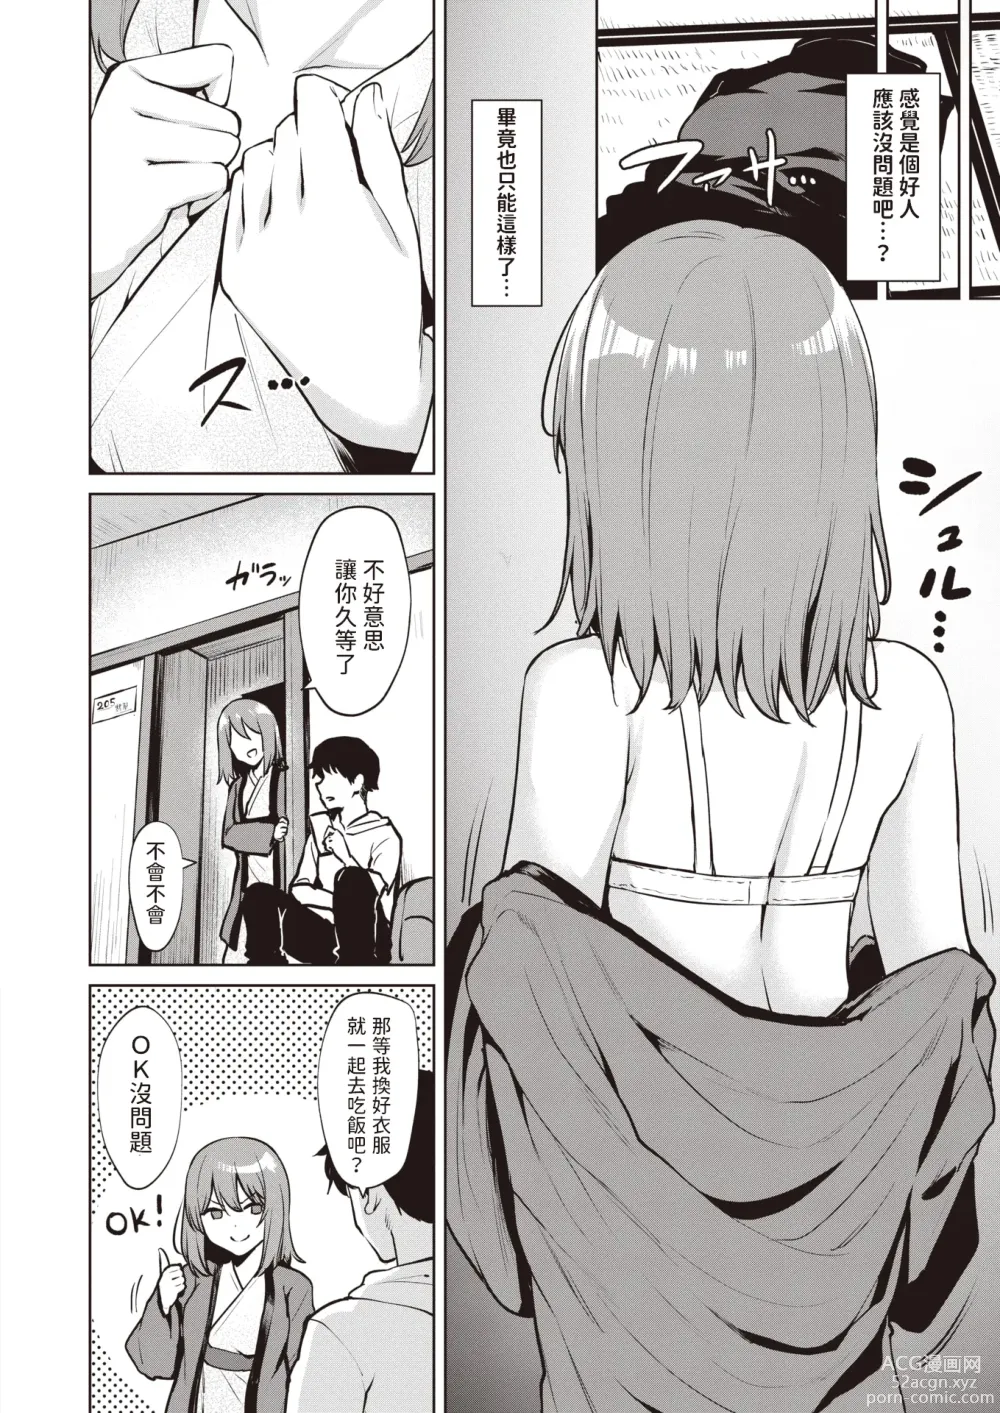 Page 4 of manga Shinmitsu